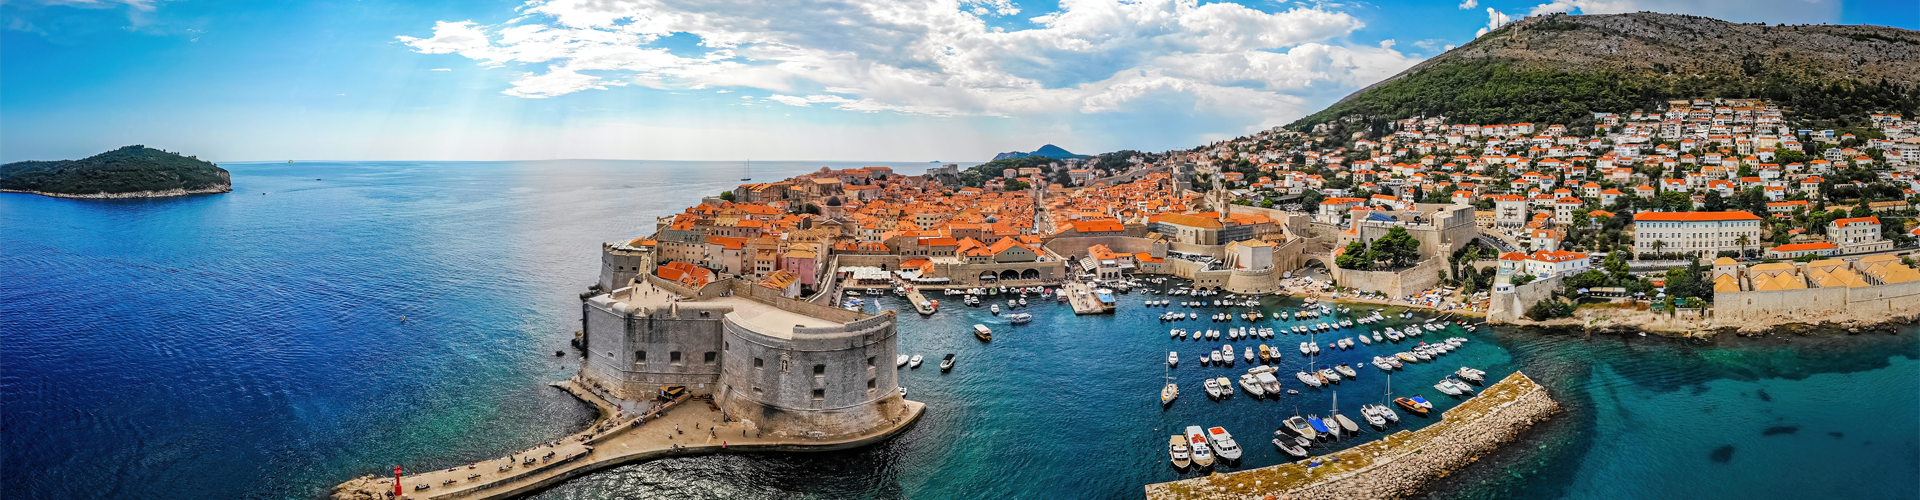 Dubrovnik Skyline